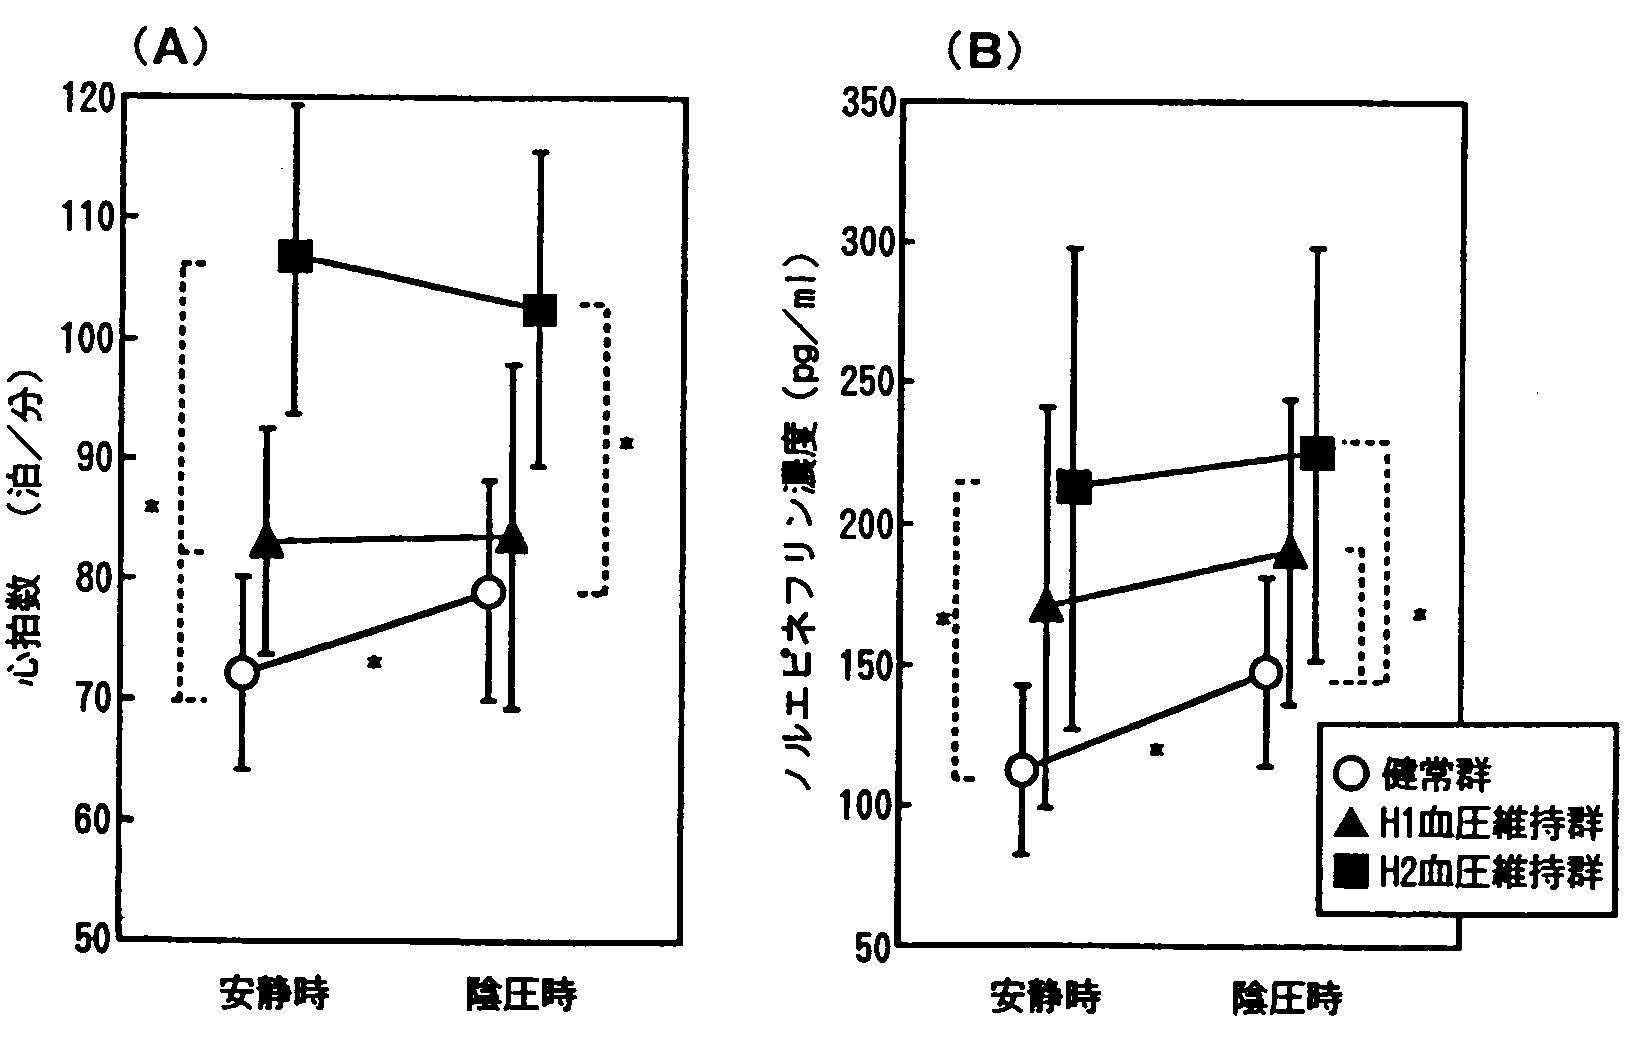 図５　安静時と陰圧時における心拍数（A）と血漿ノルエピネフリン濃度（Ｂ）